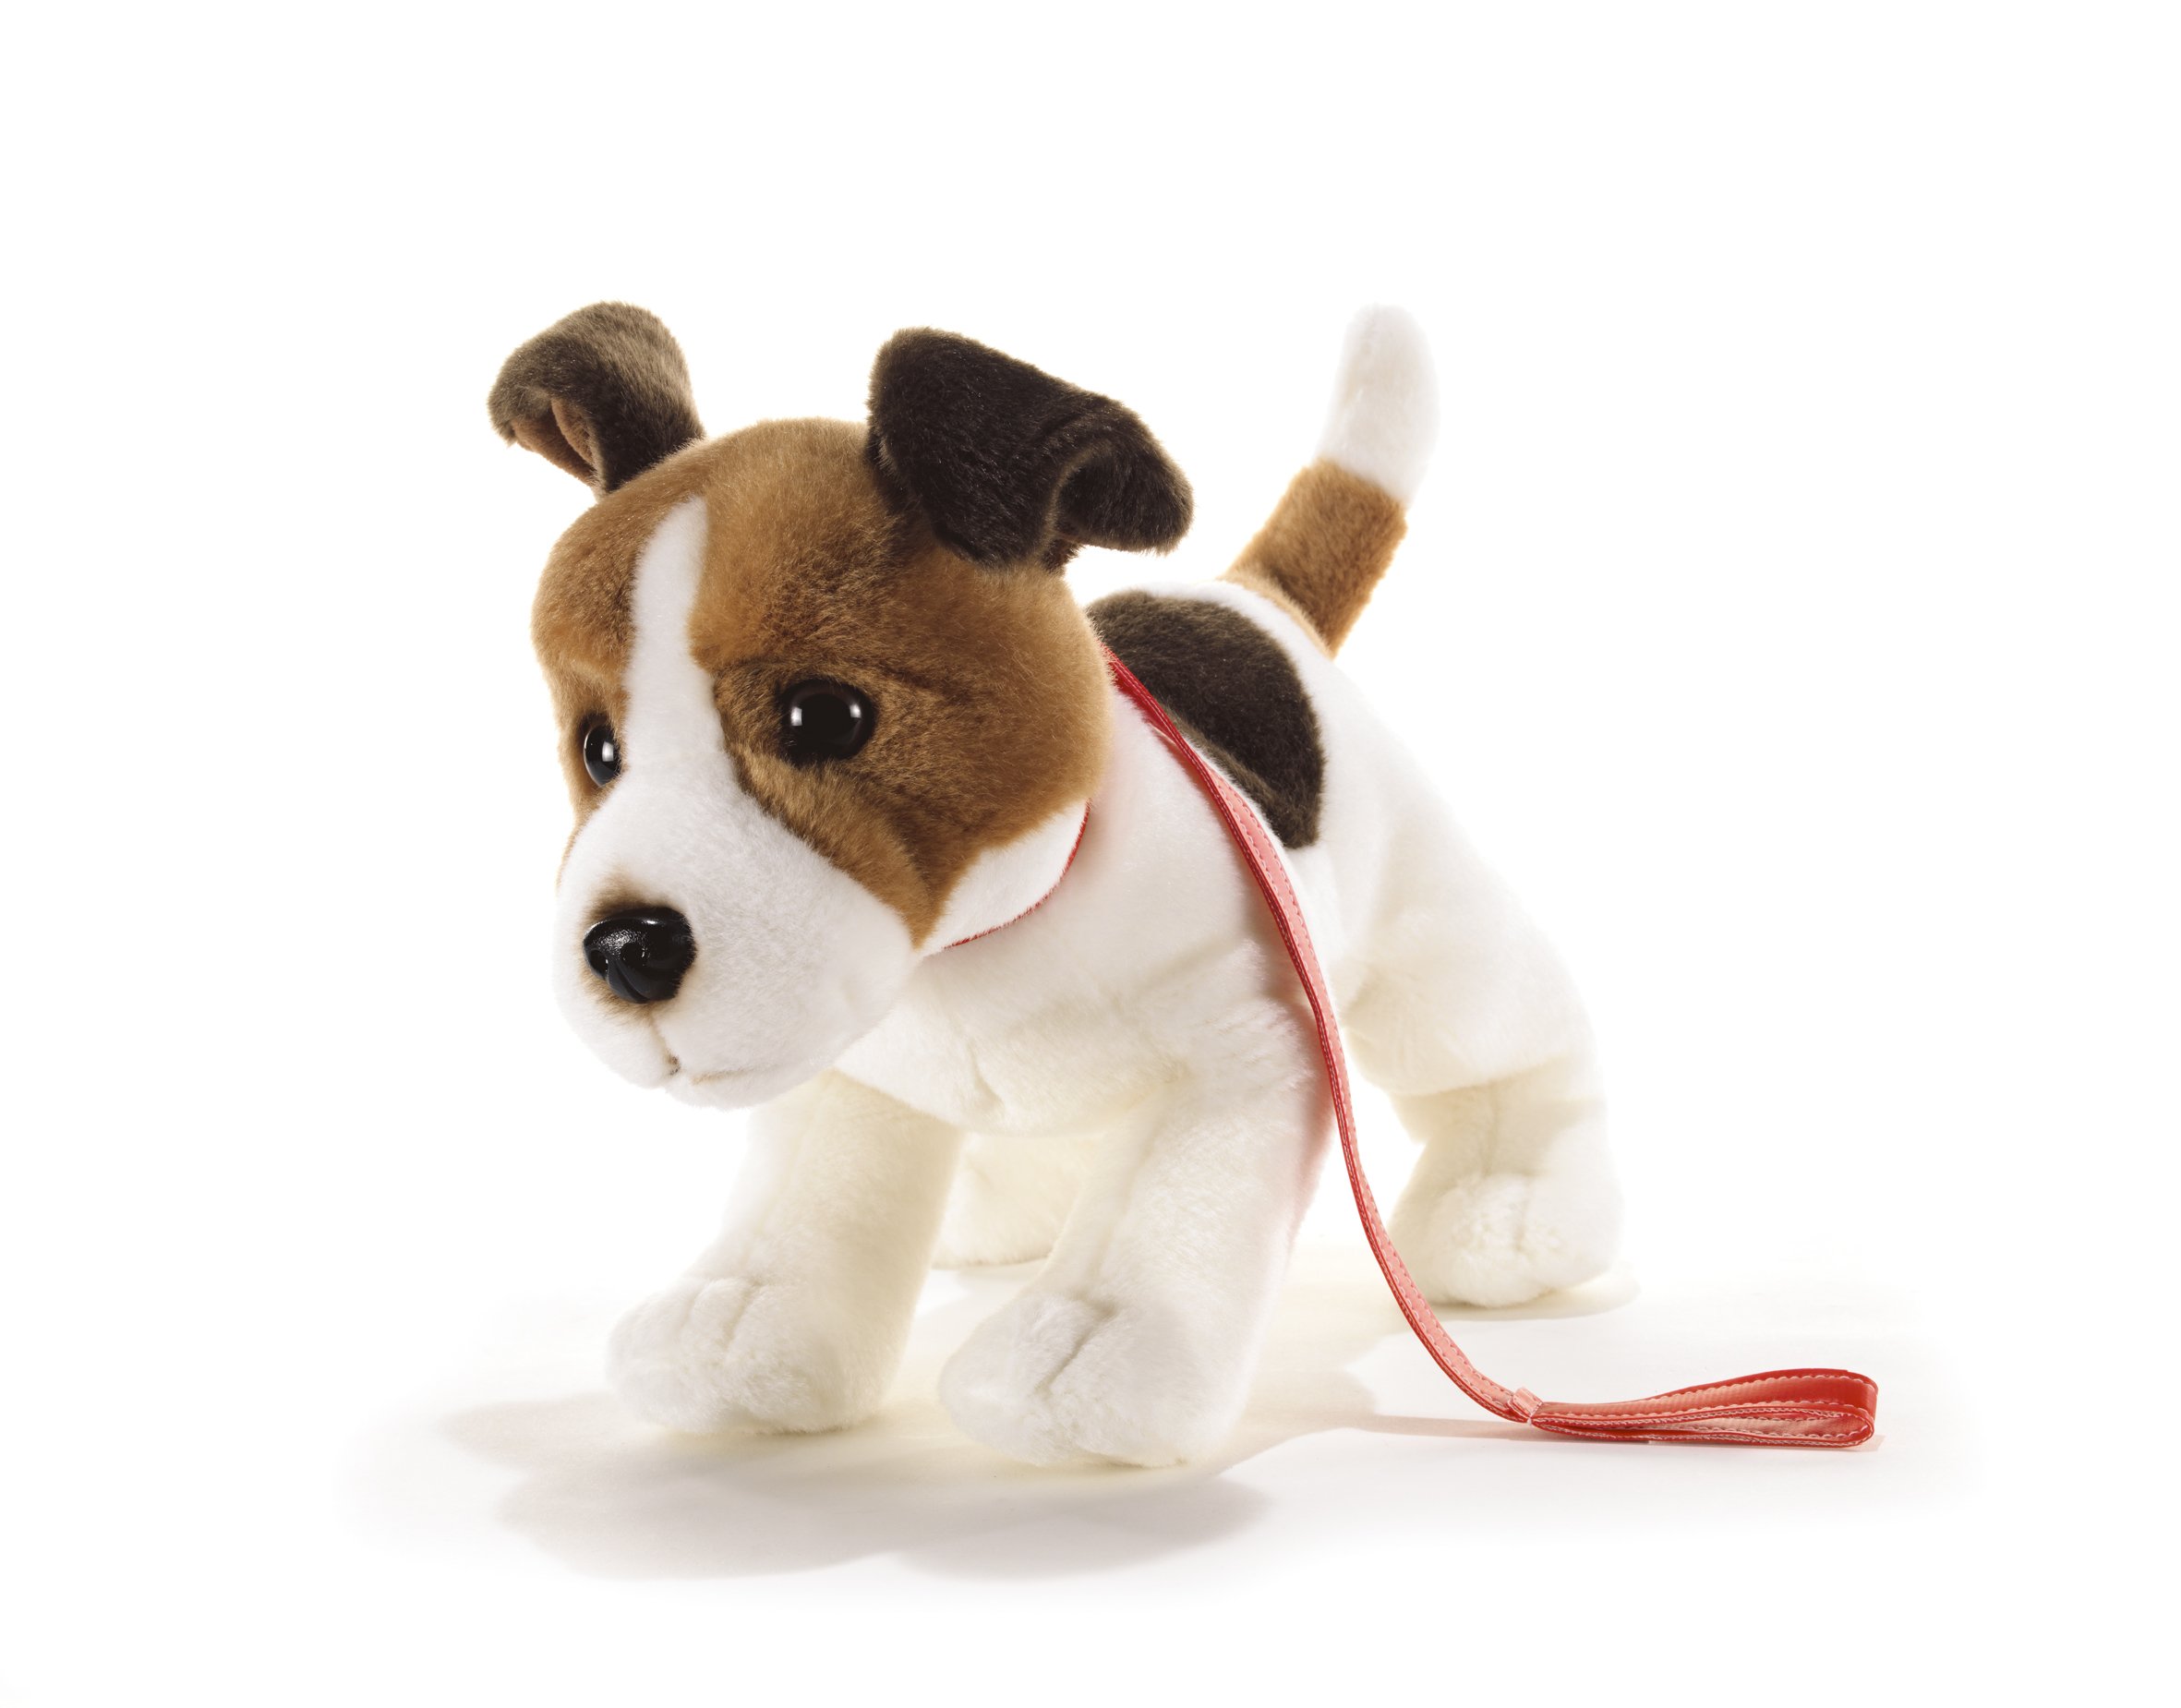 Plüsch & Company 15782 "Hunde Milo JRT mit Leine Plüsch Spielzeug, 32 cm